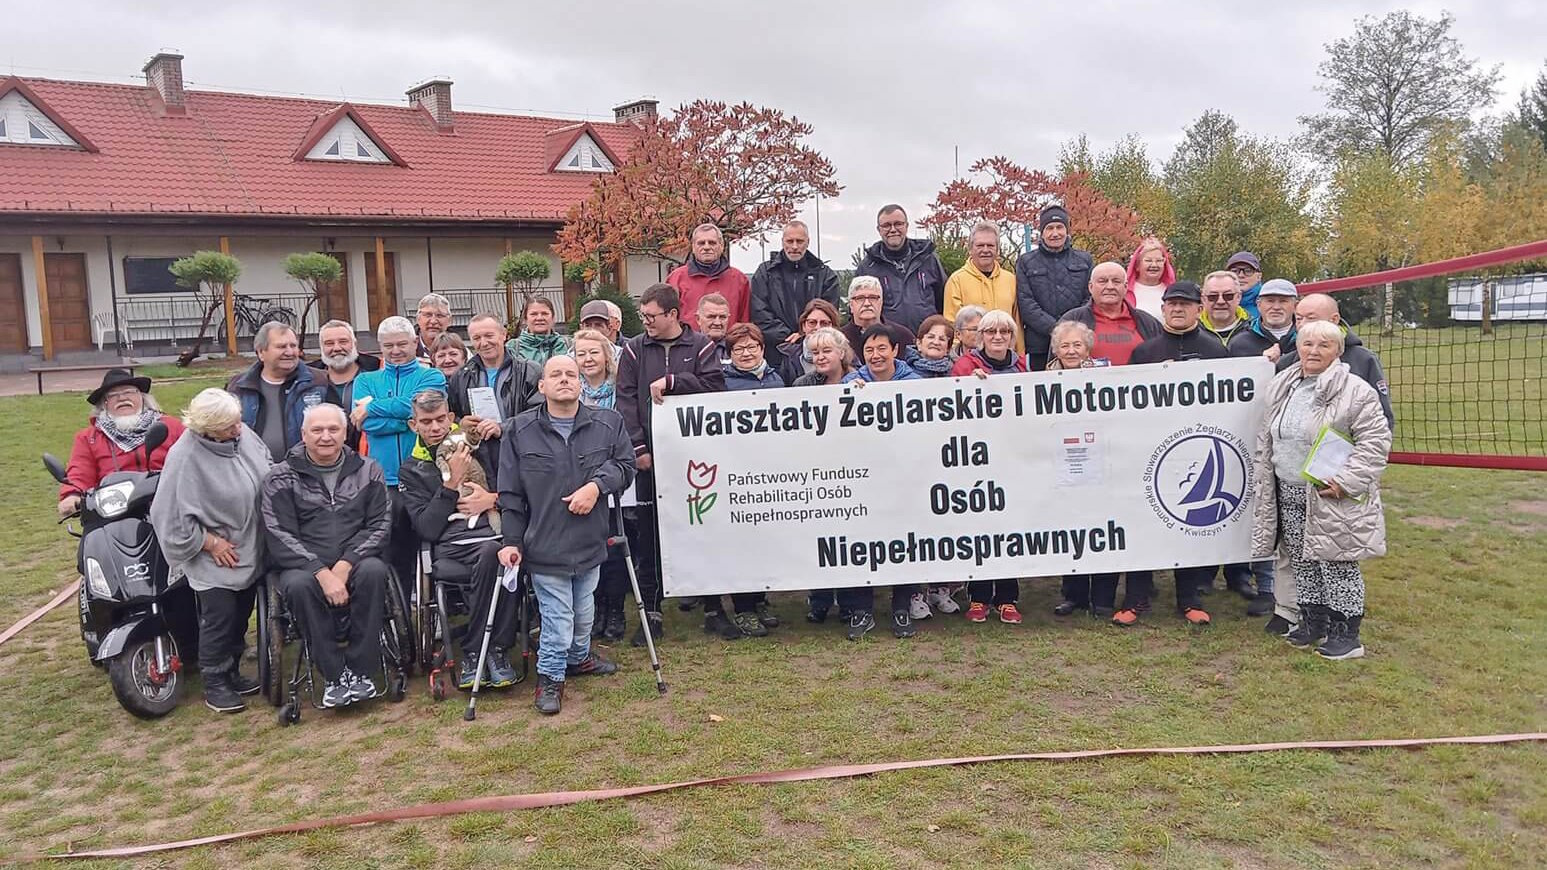 Zdjęcie grupowe uczestników Warsztatów Żeglarskich i Motorowodnych dla Osób Niepełnosprawnych